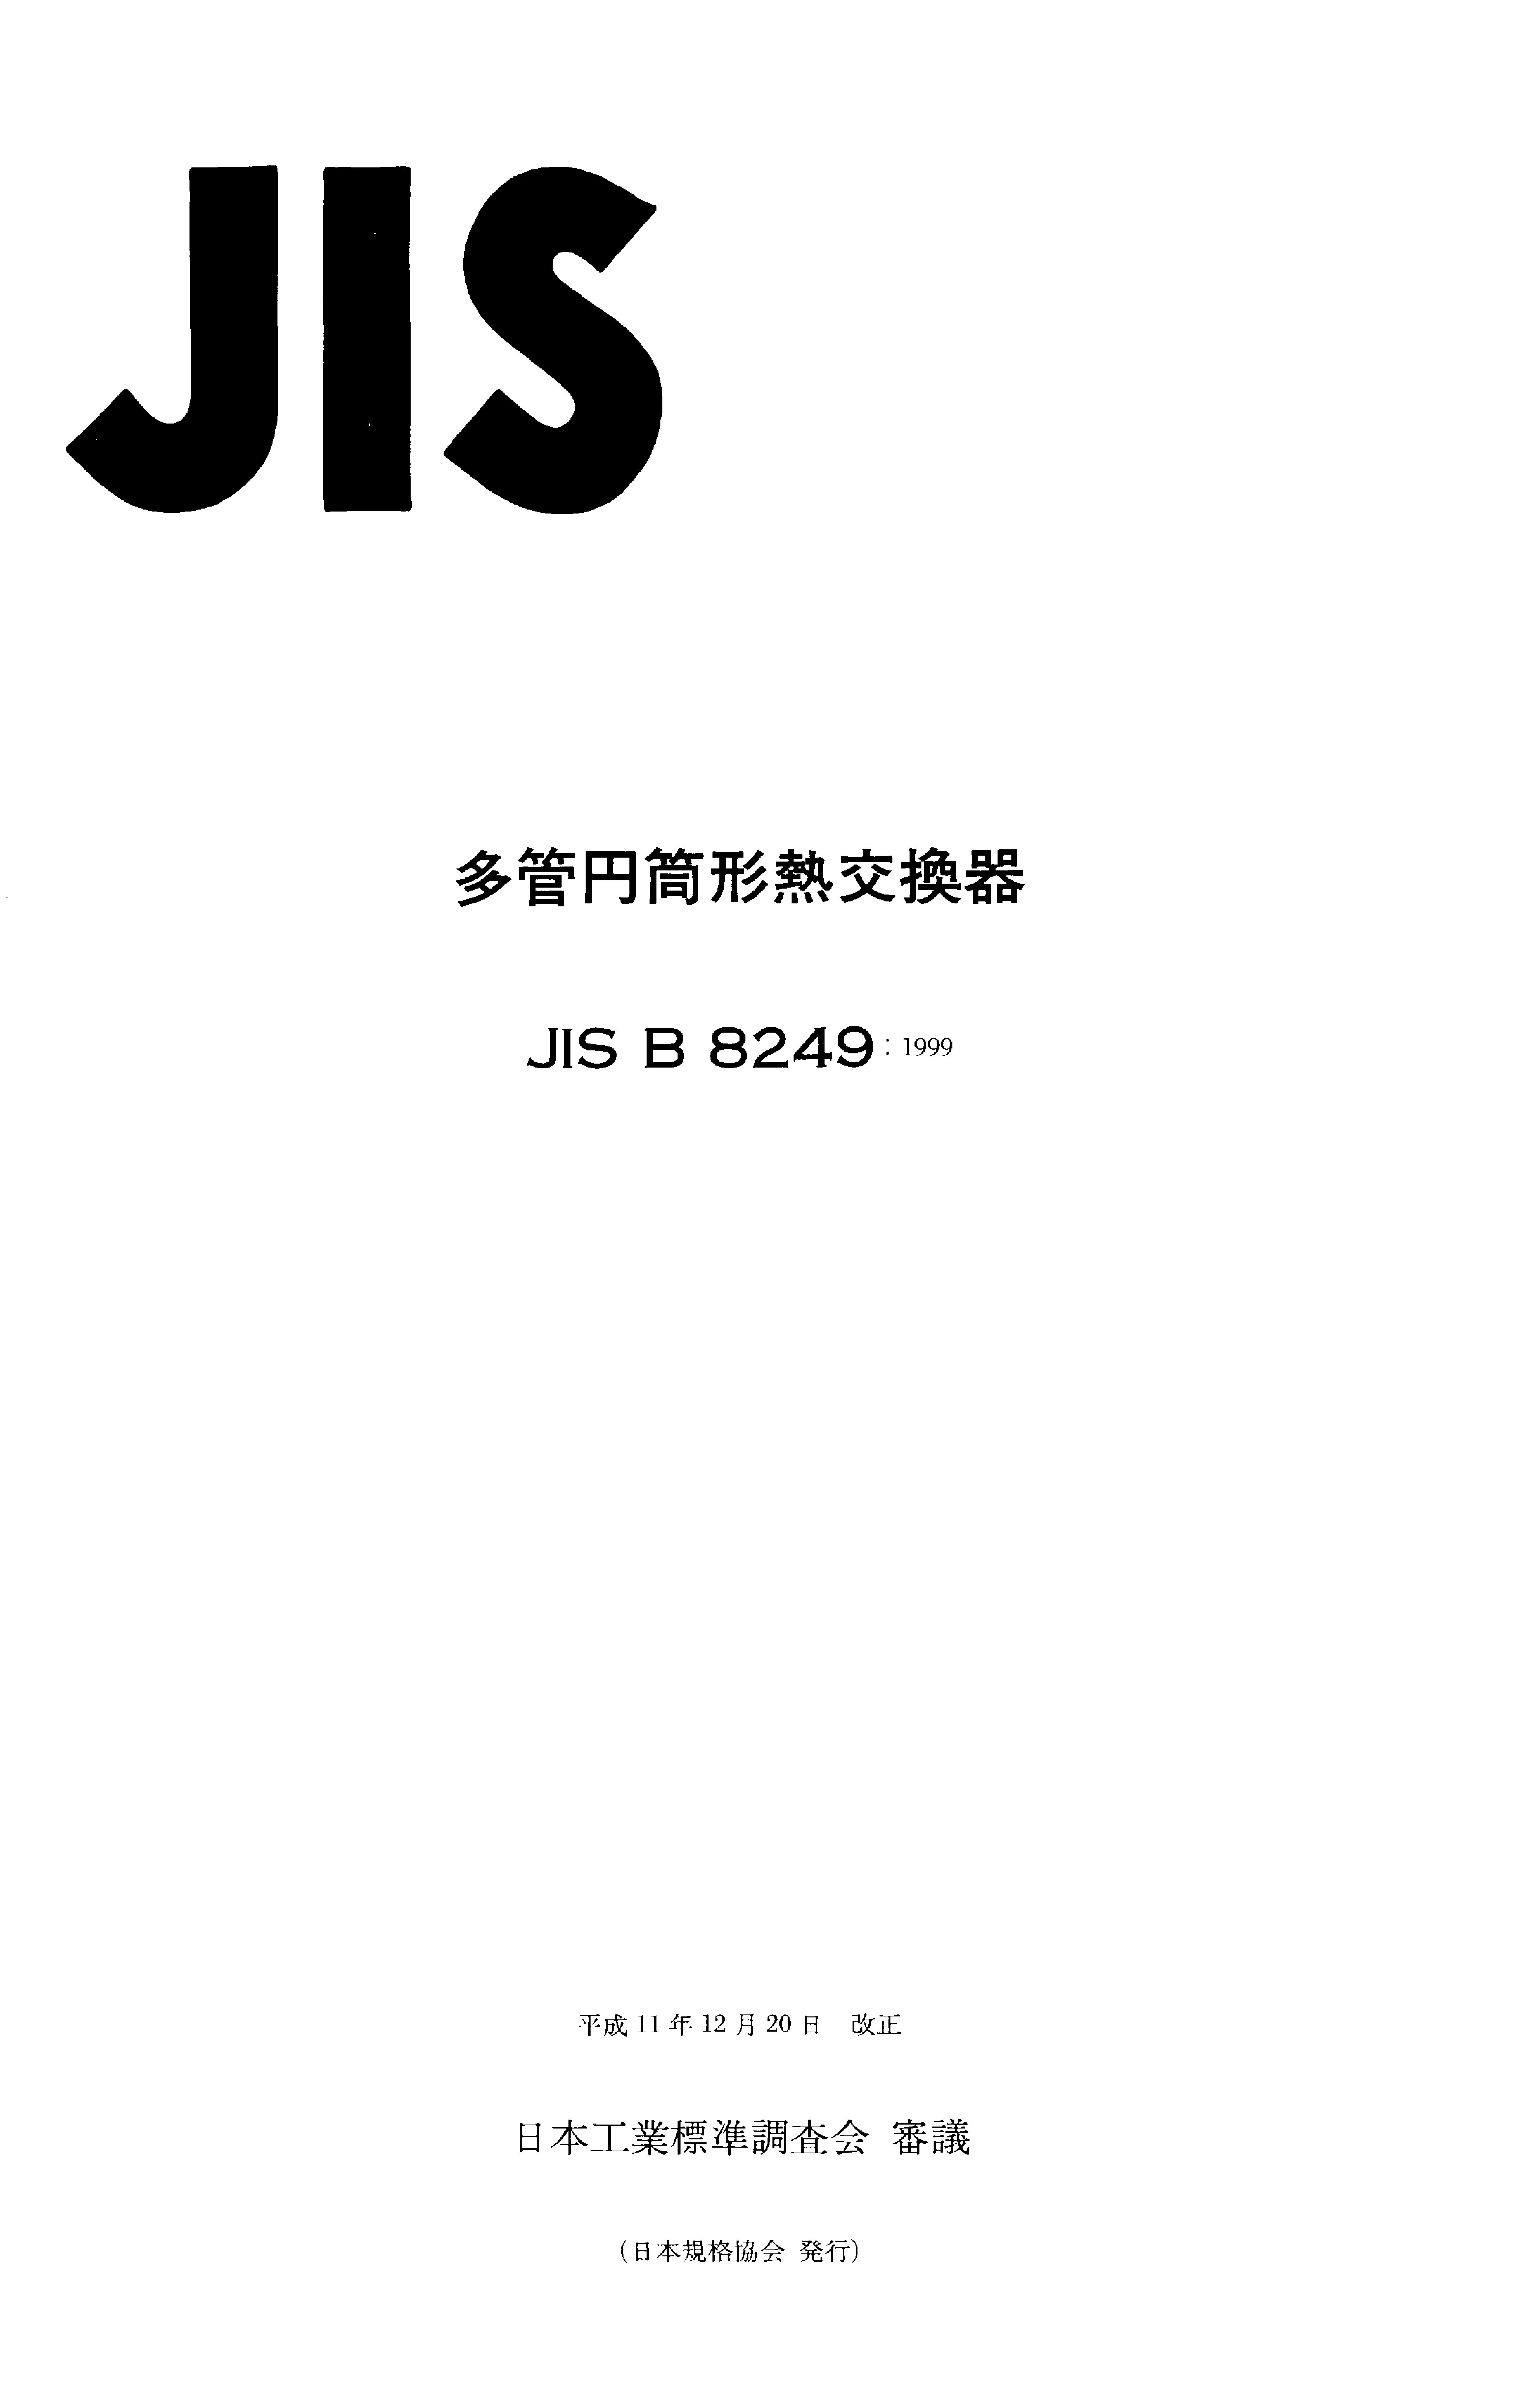 JIS B 8249:1999封面图